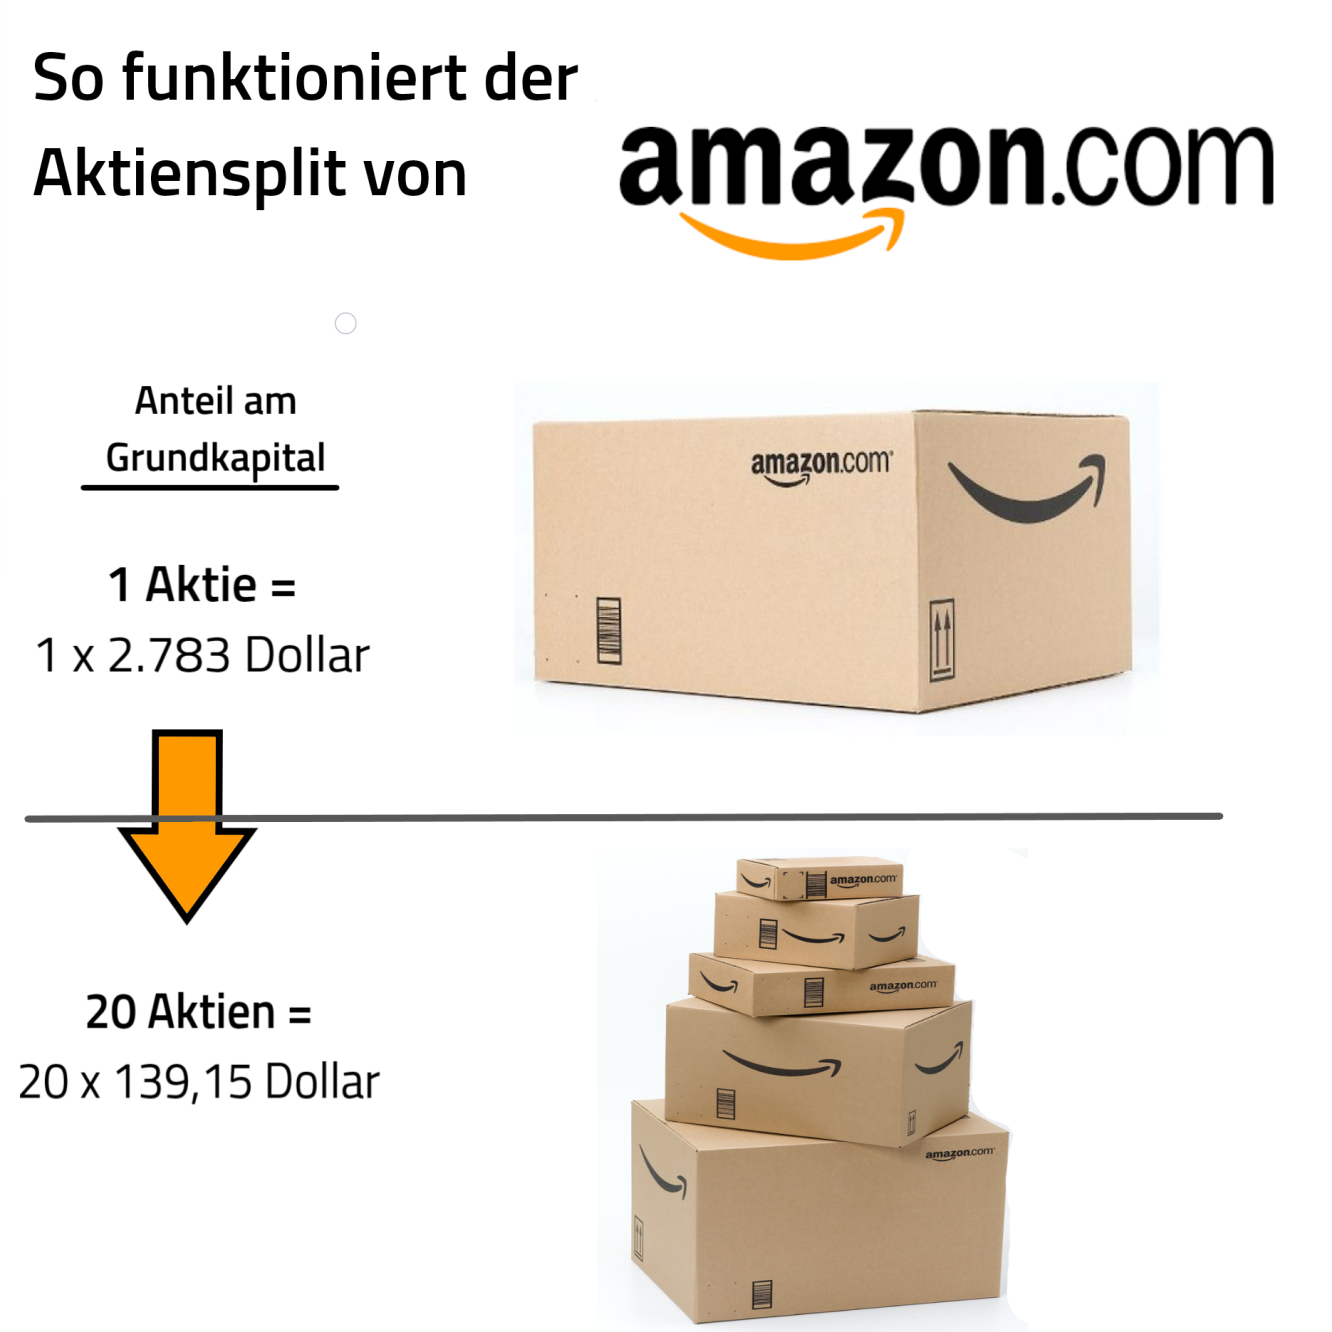 Amazon Aktiensplit